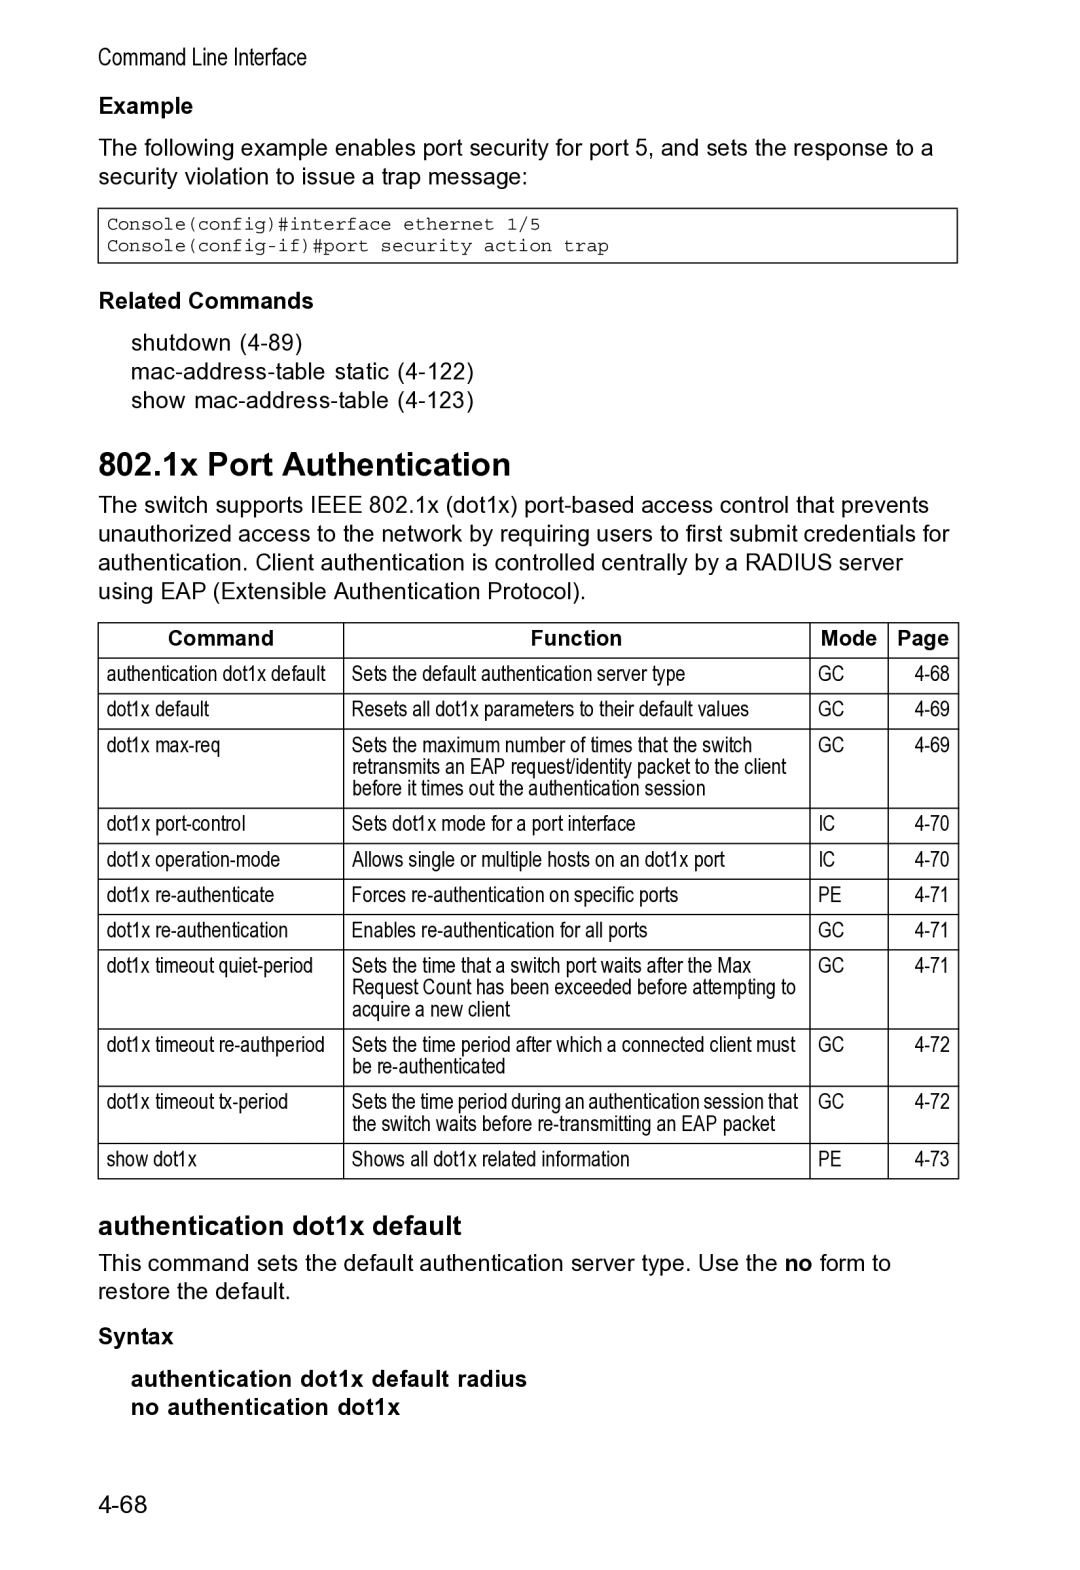 Accton Technology VS4512DC manual 802.1x Port Authentication, Authentication dot1x default 